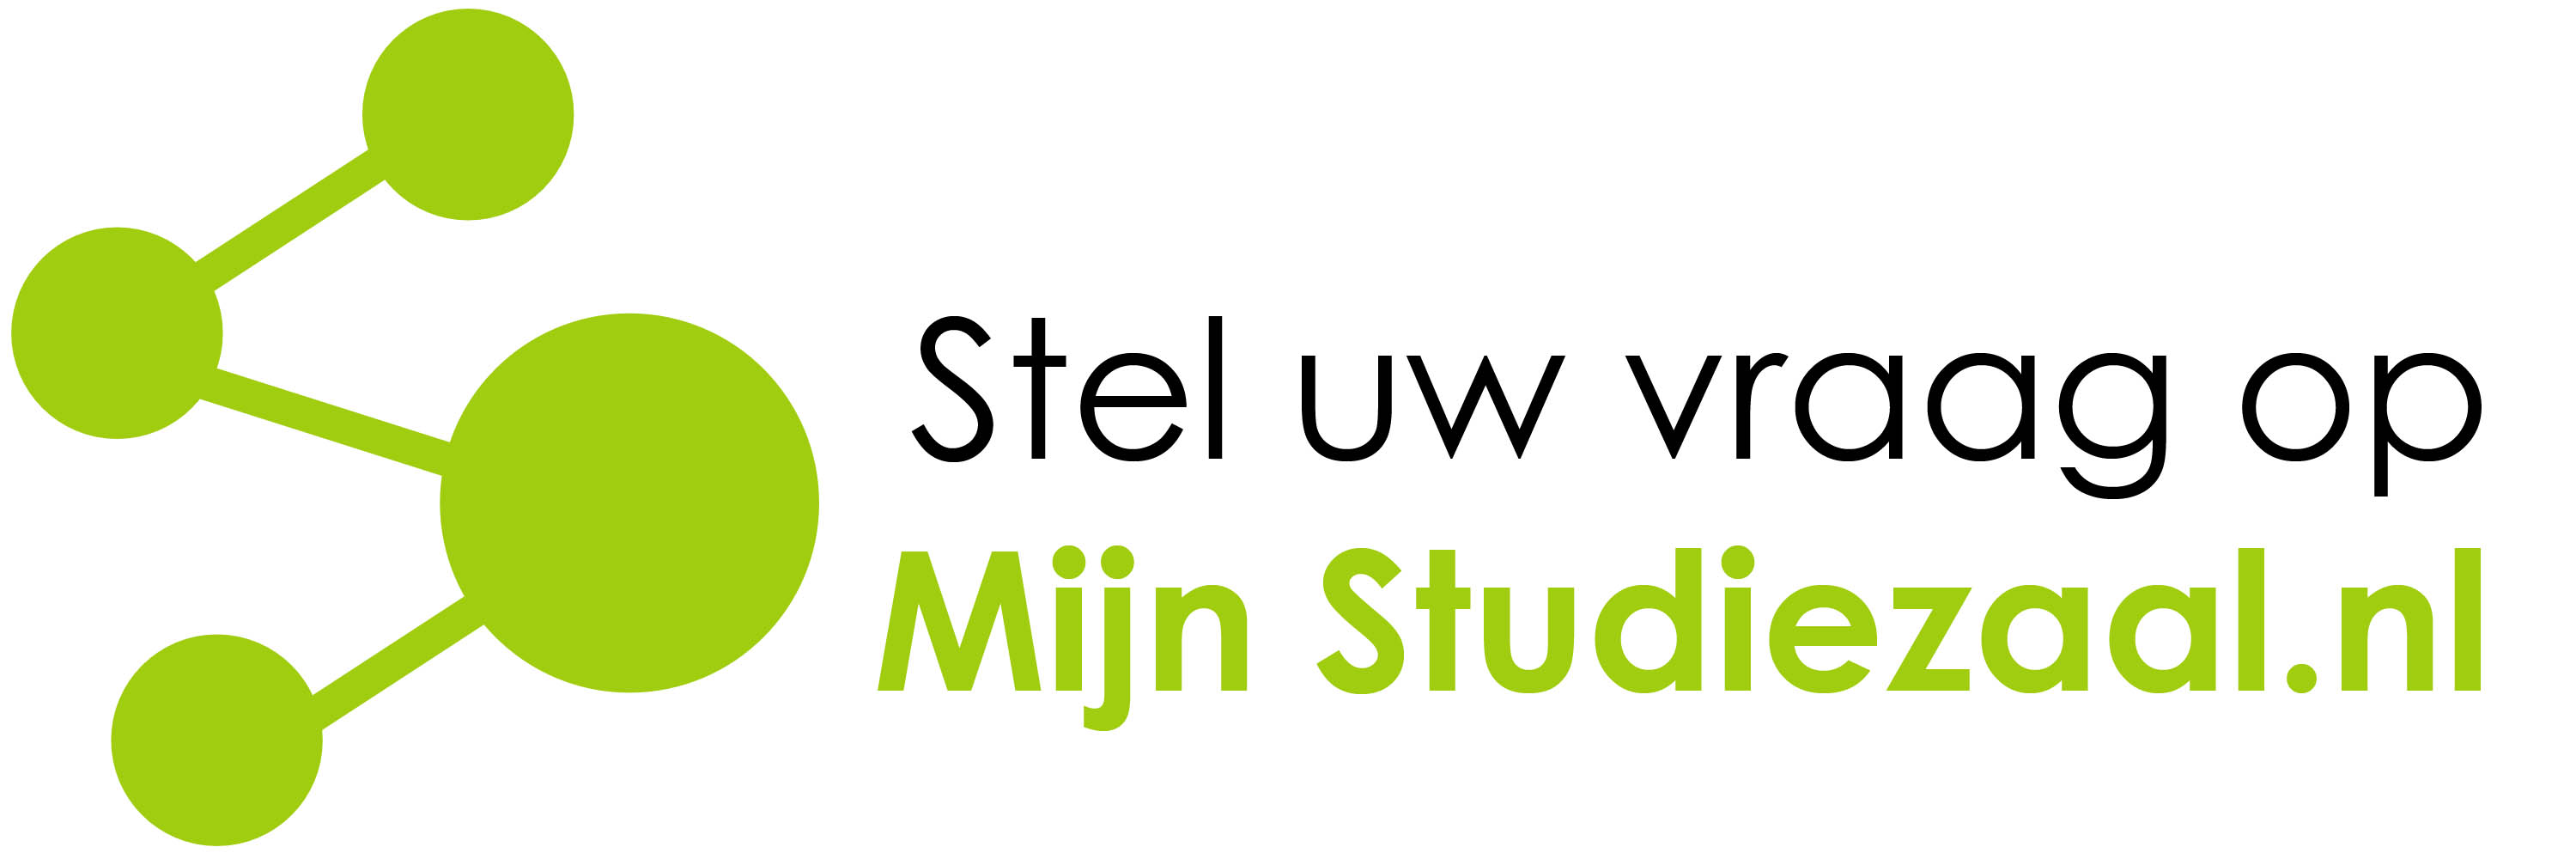 logo mijnstudiezaal.nl